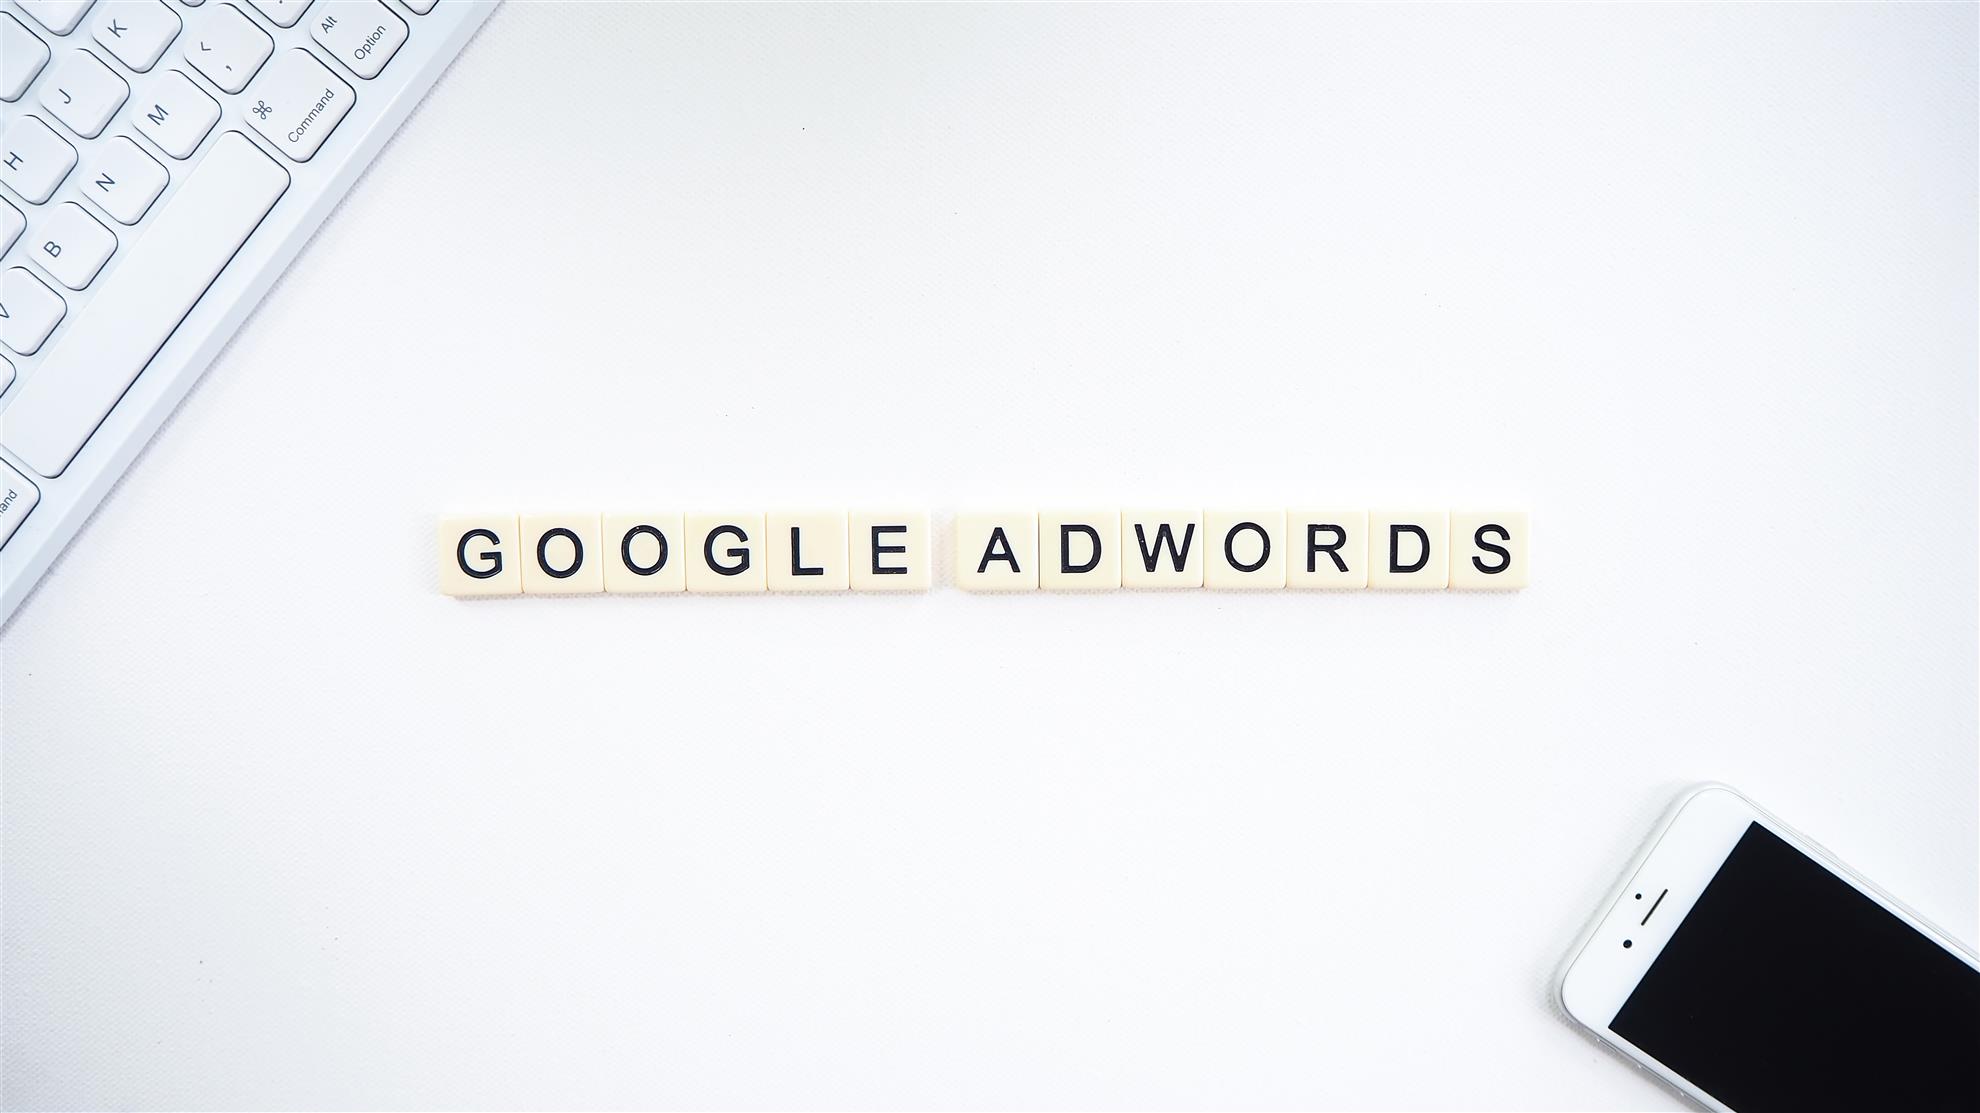 Pubblicità mirata: Google Ads